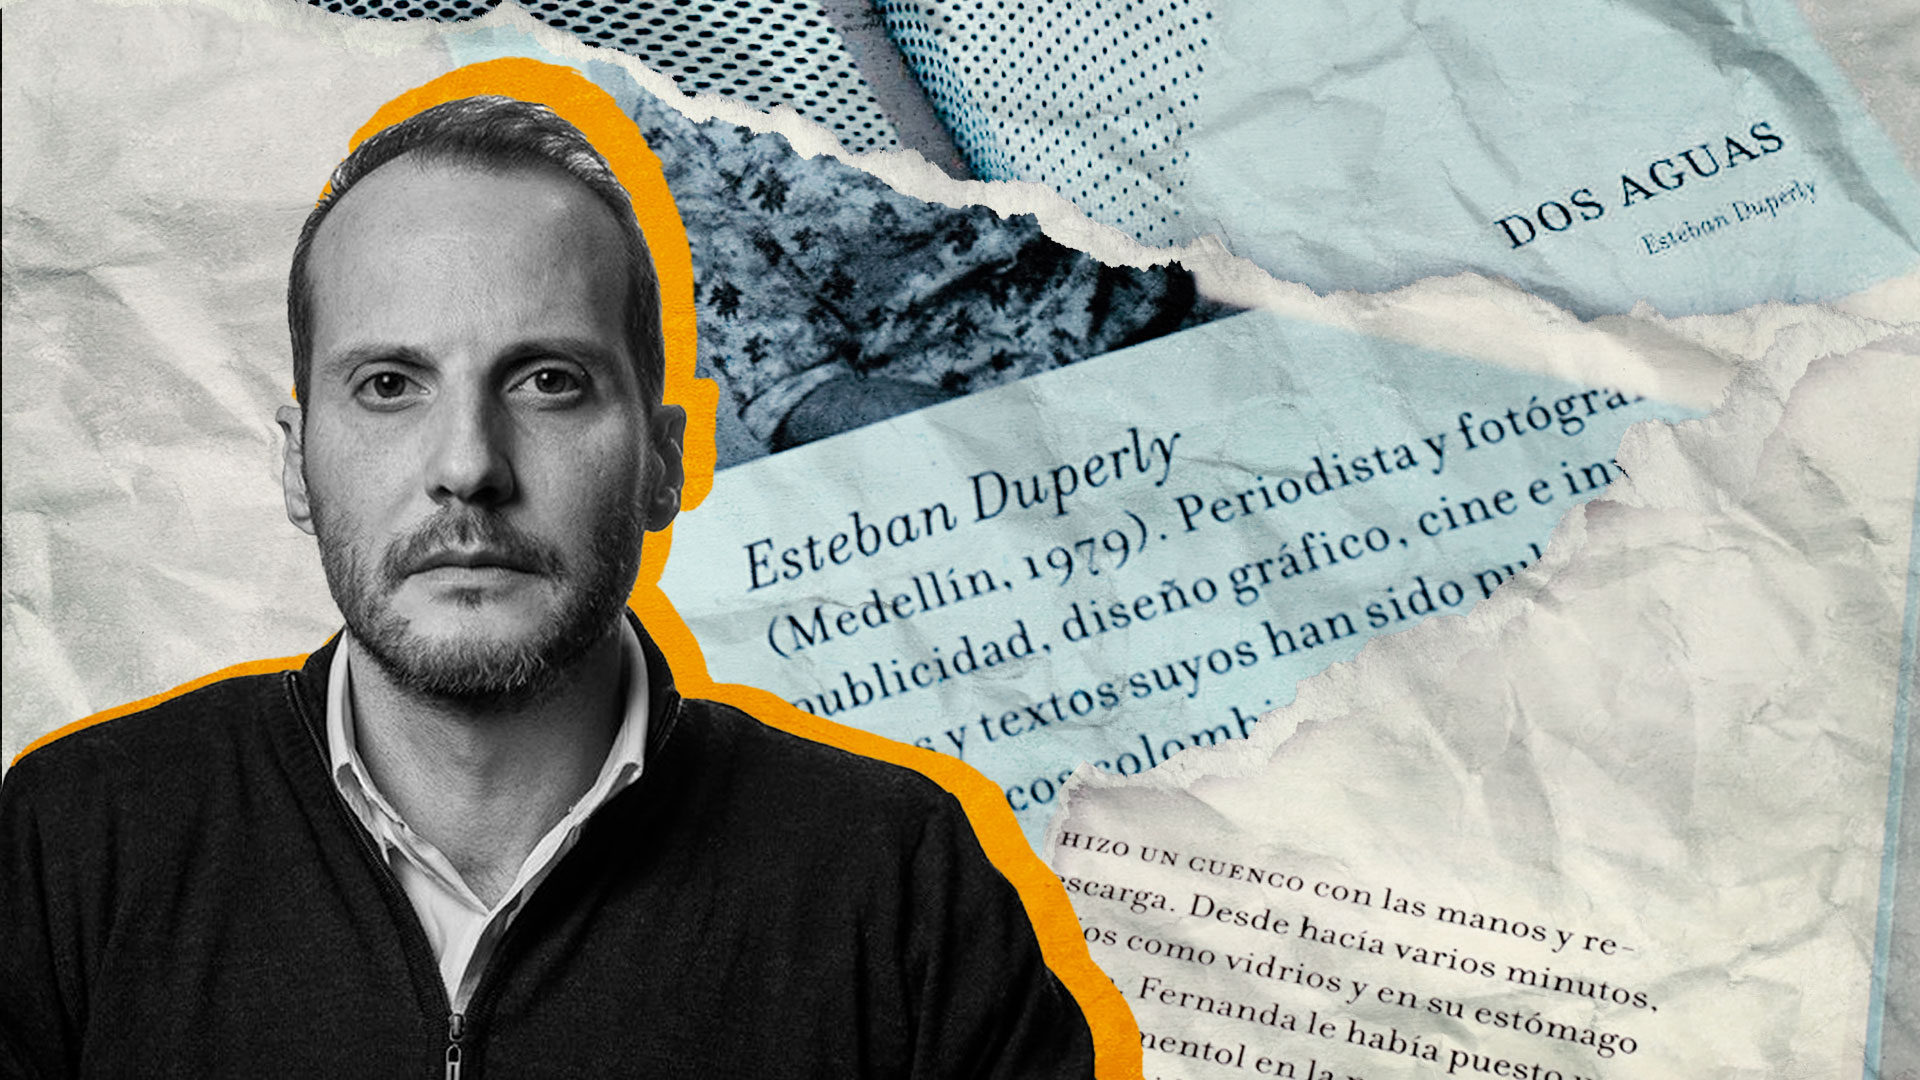 El escritor colombiano Esteban Duperly habla sobre el trabajo detrás de su novela “Dos aguas”, cinco años después de su publicación original